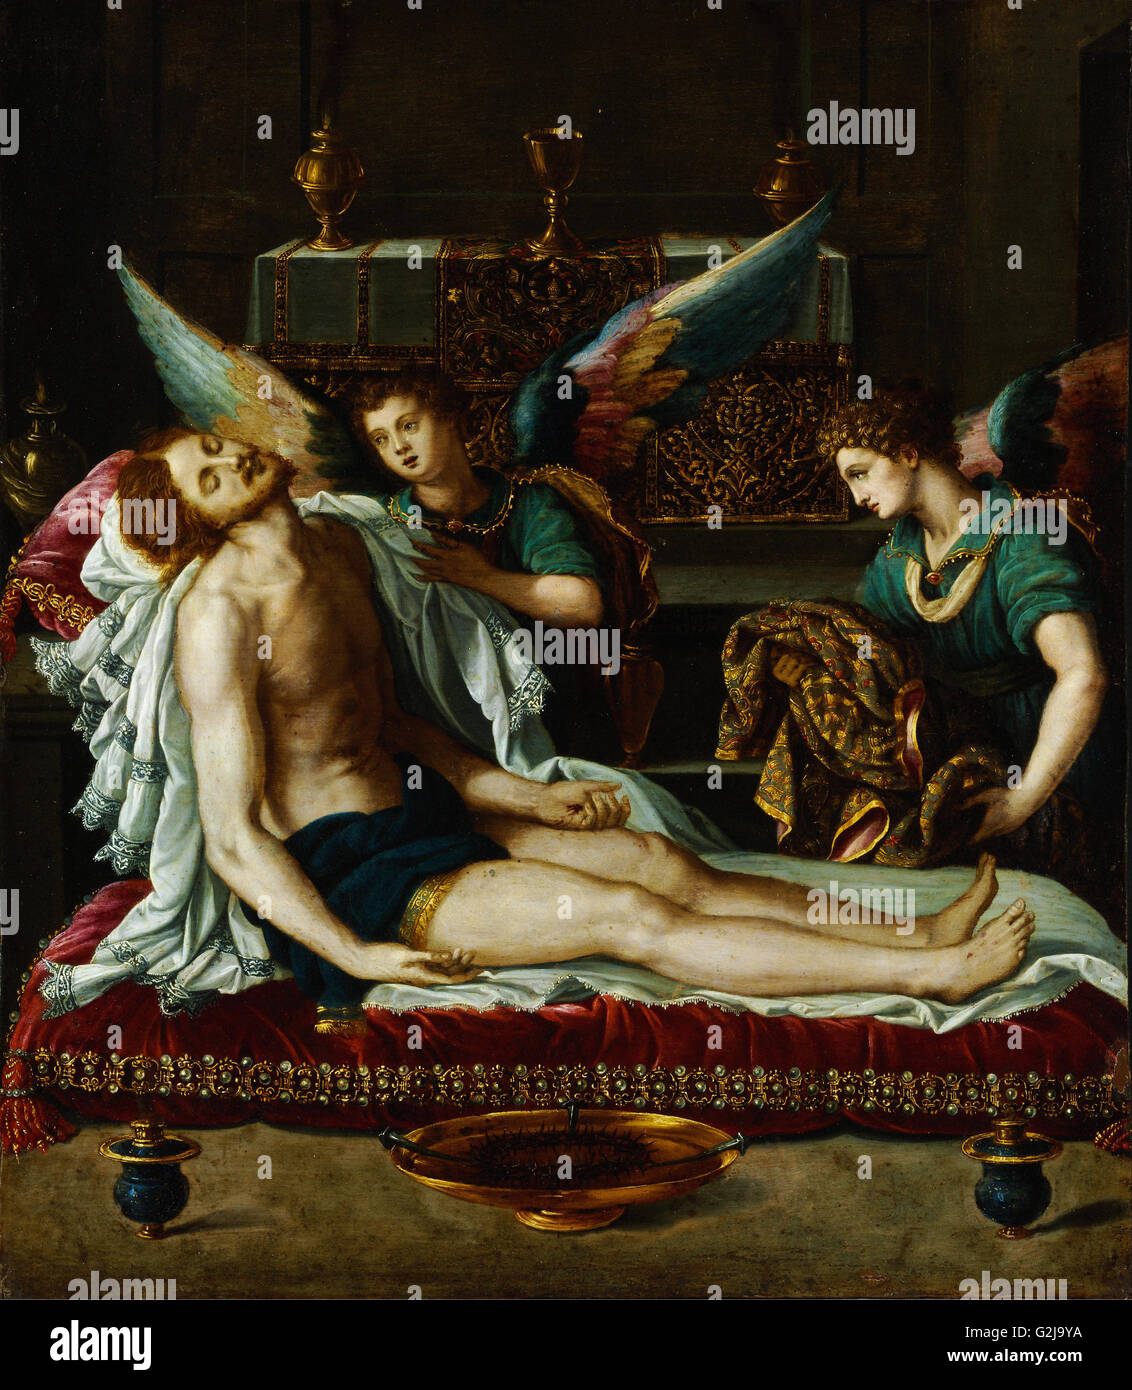 Alessandro Allori - Le Corps du Christ oint par deux anges - Musée des beaux-arts, Budapest Banque D'Images